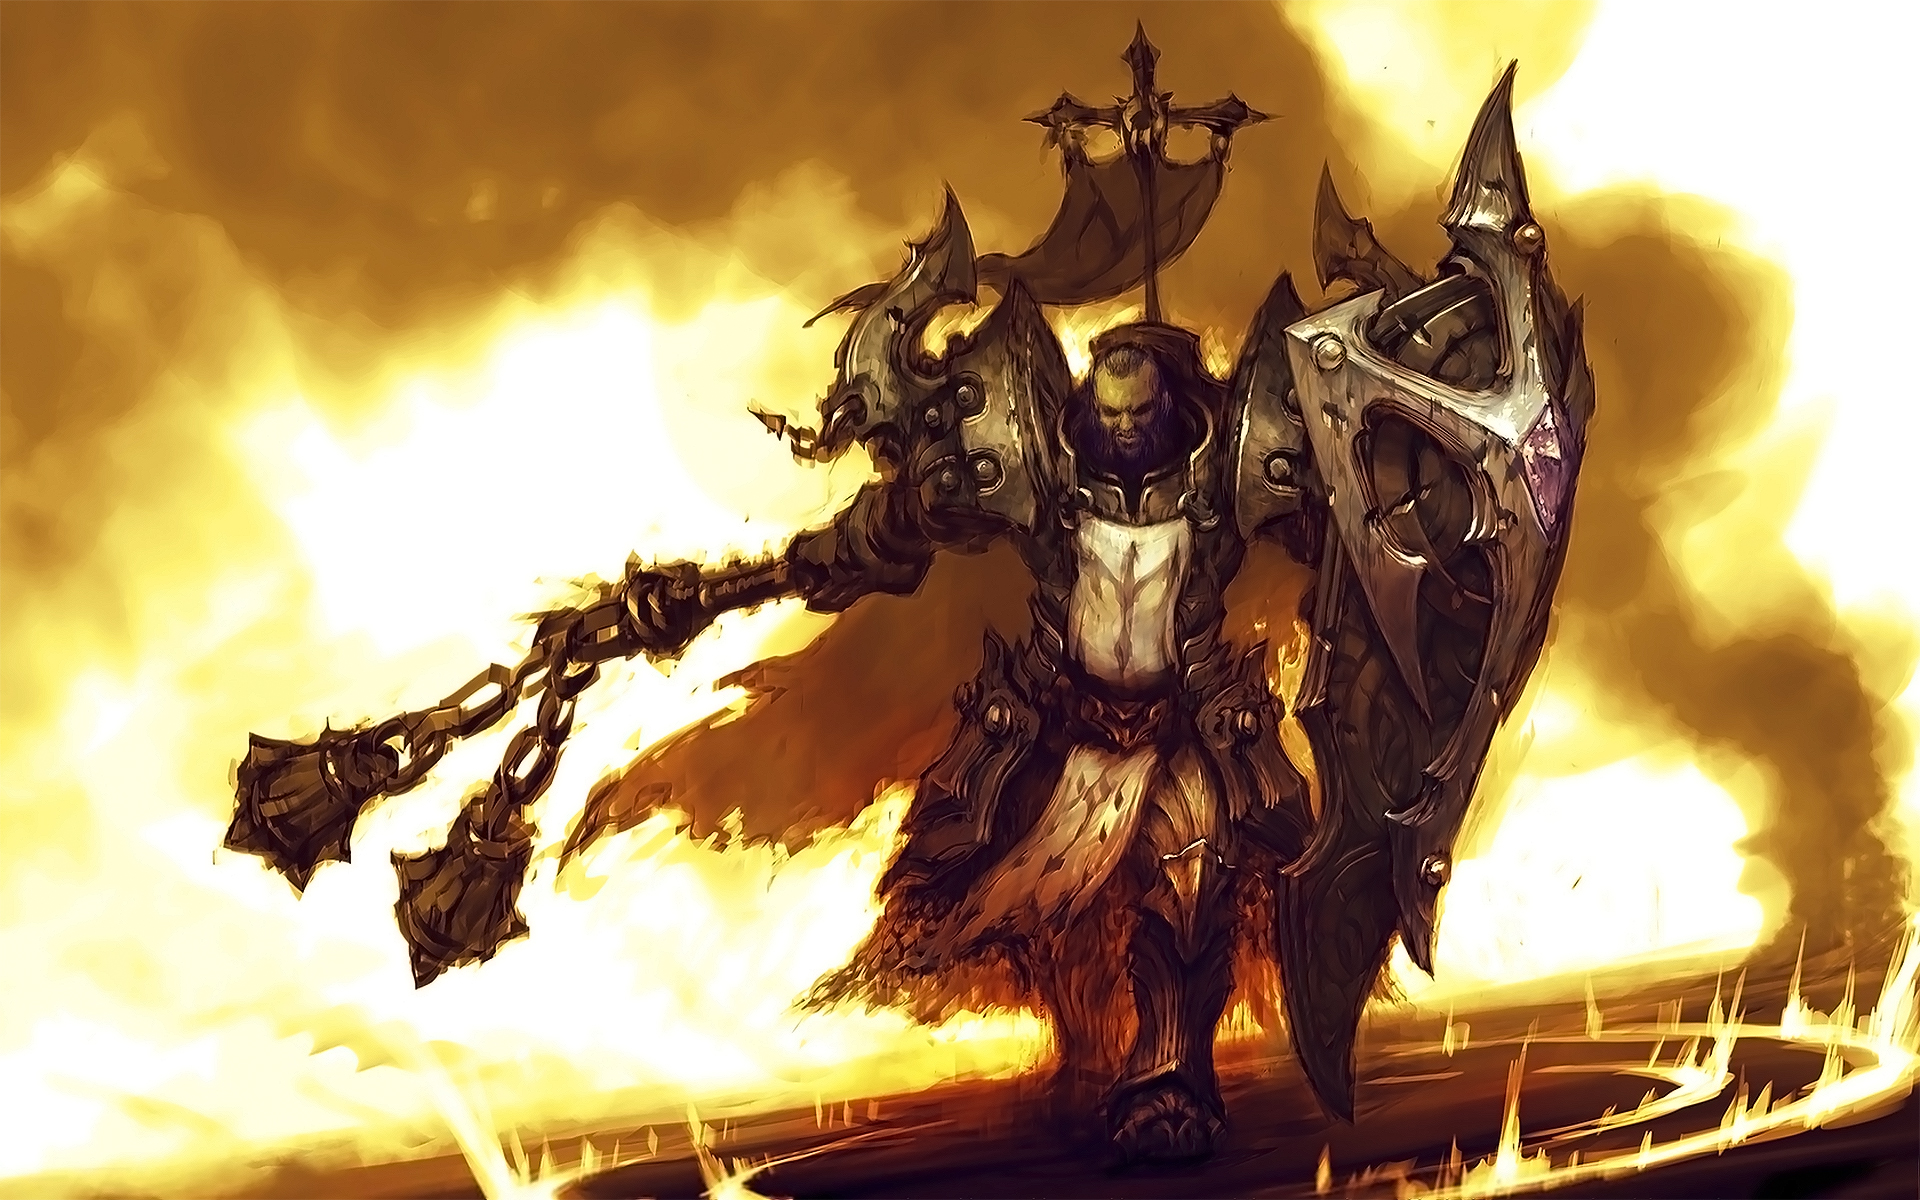 Популярные заставки и фоны Крестоносец (Diablo Iii) на компьютер